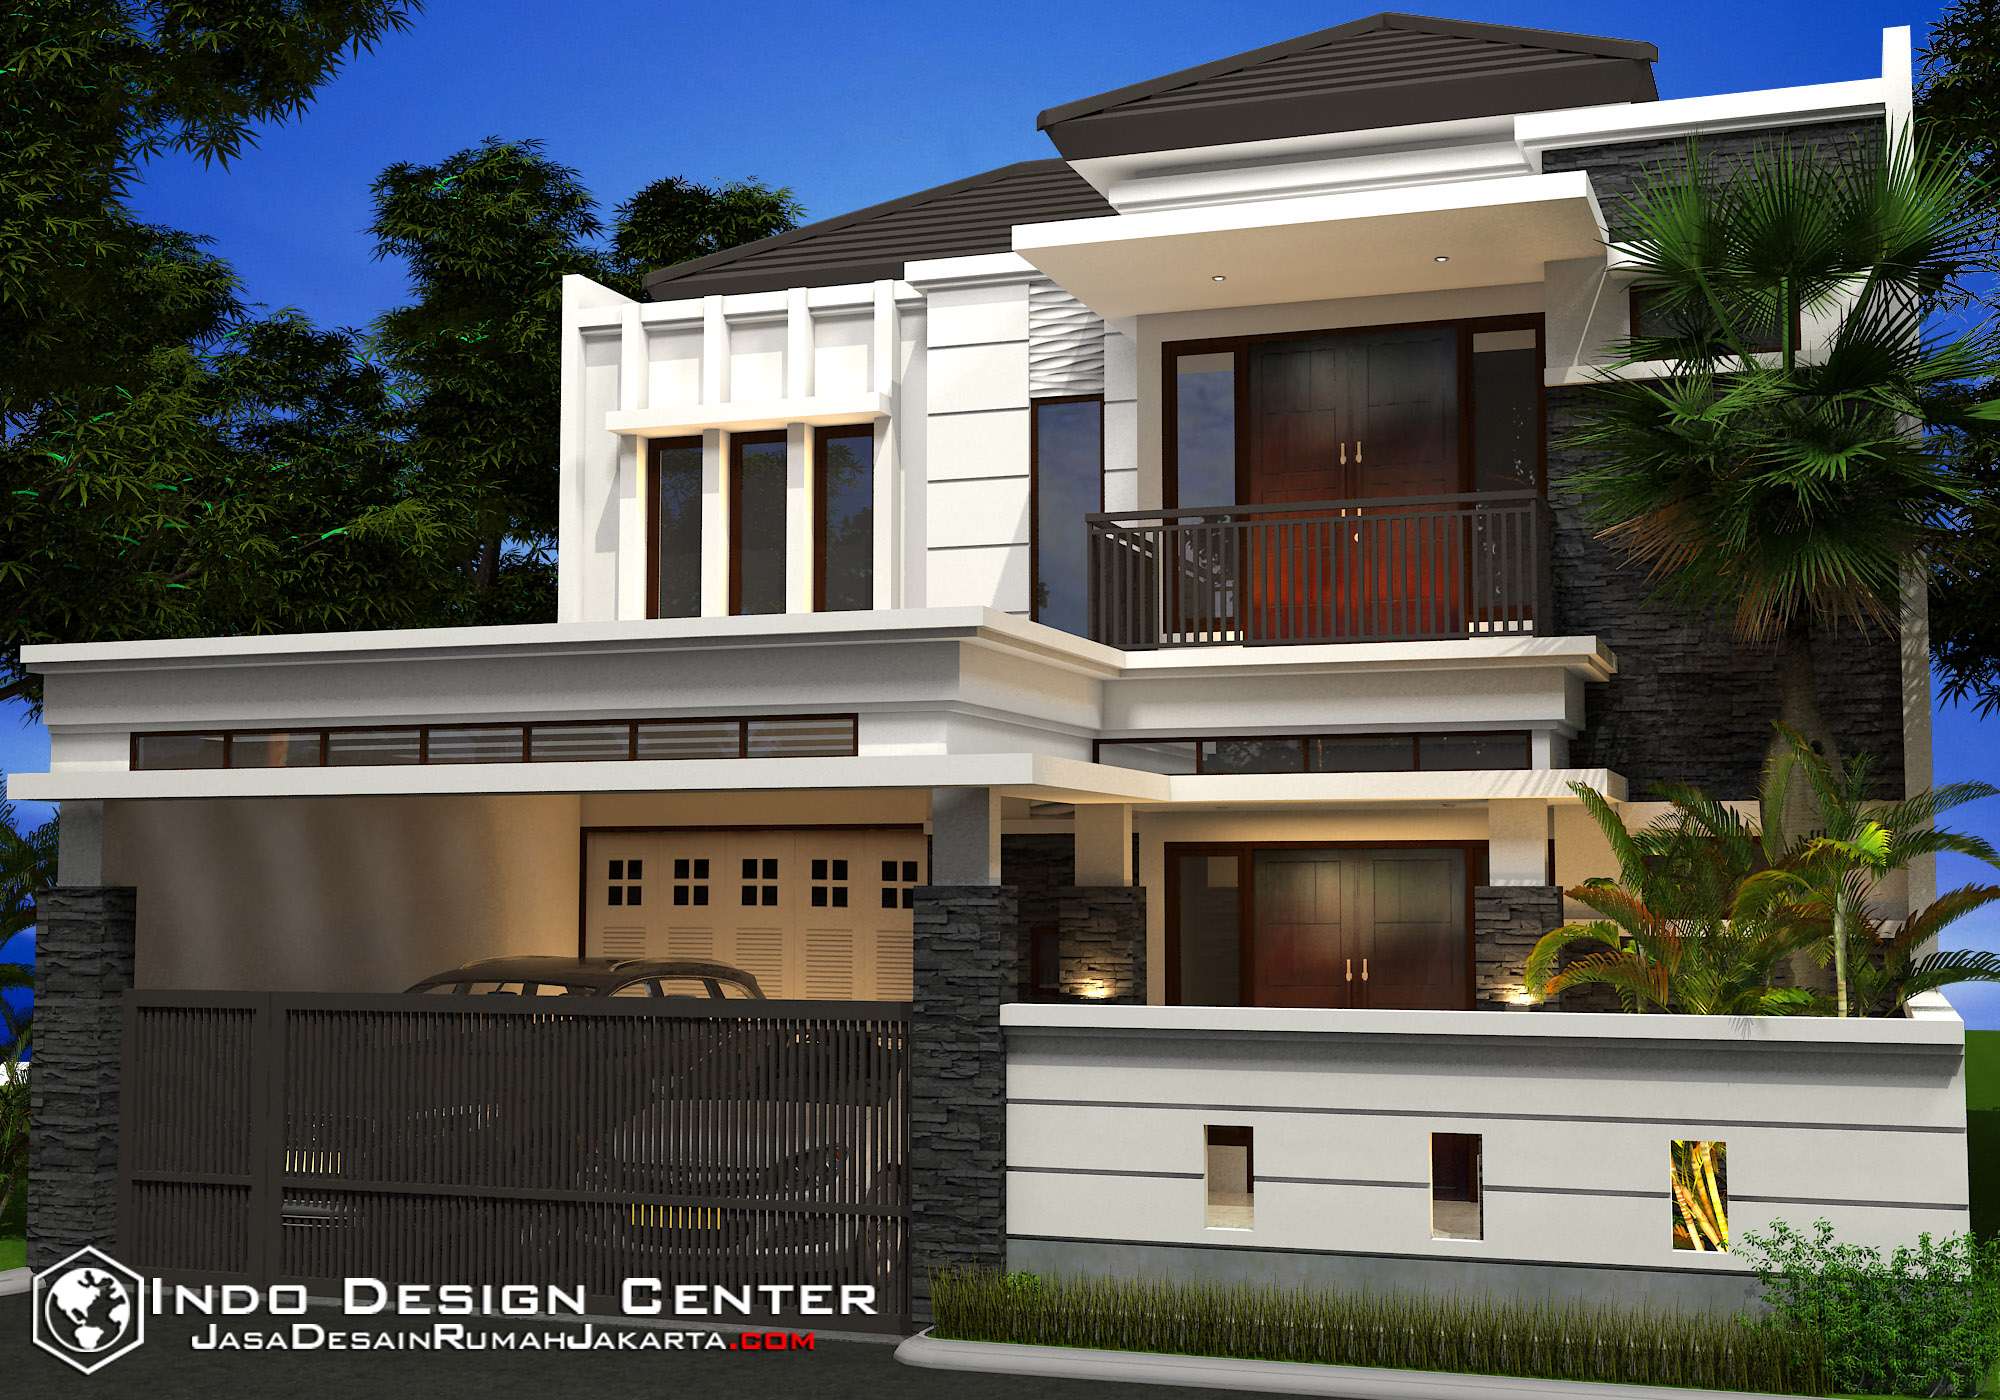 Gambar Rumah Minimalis, Jasa Desain Rumah Jakarta, Desain 